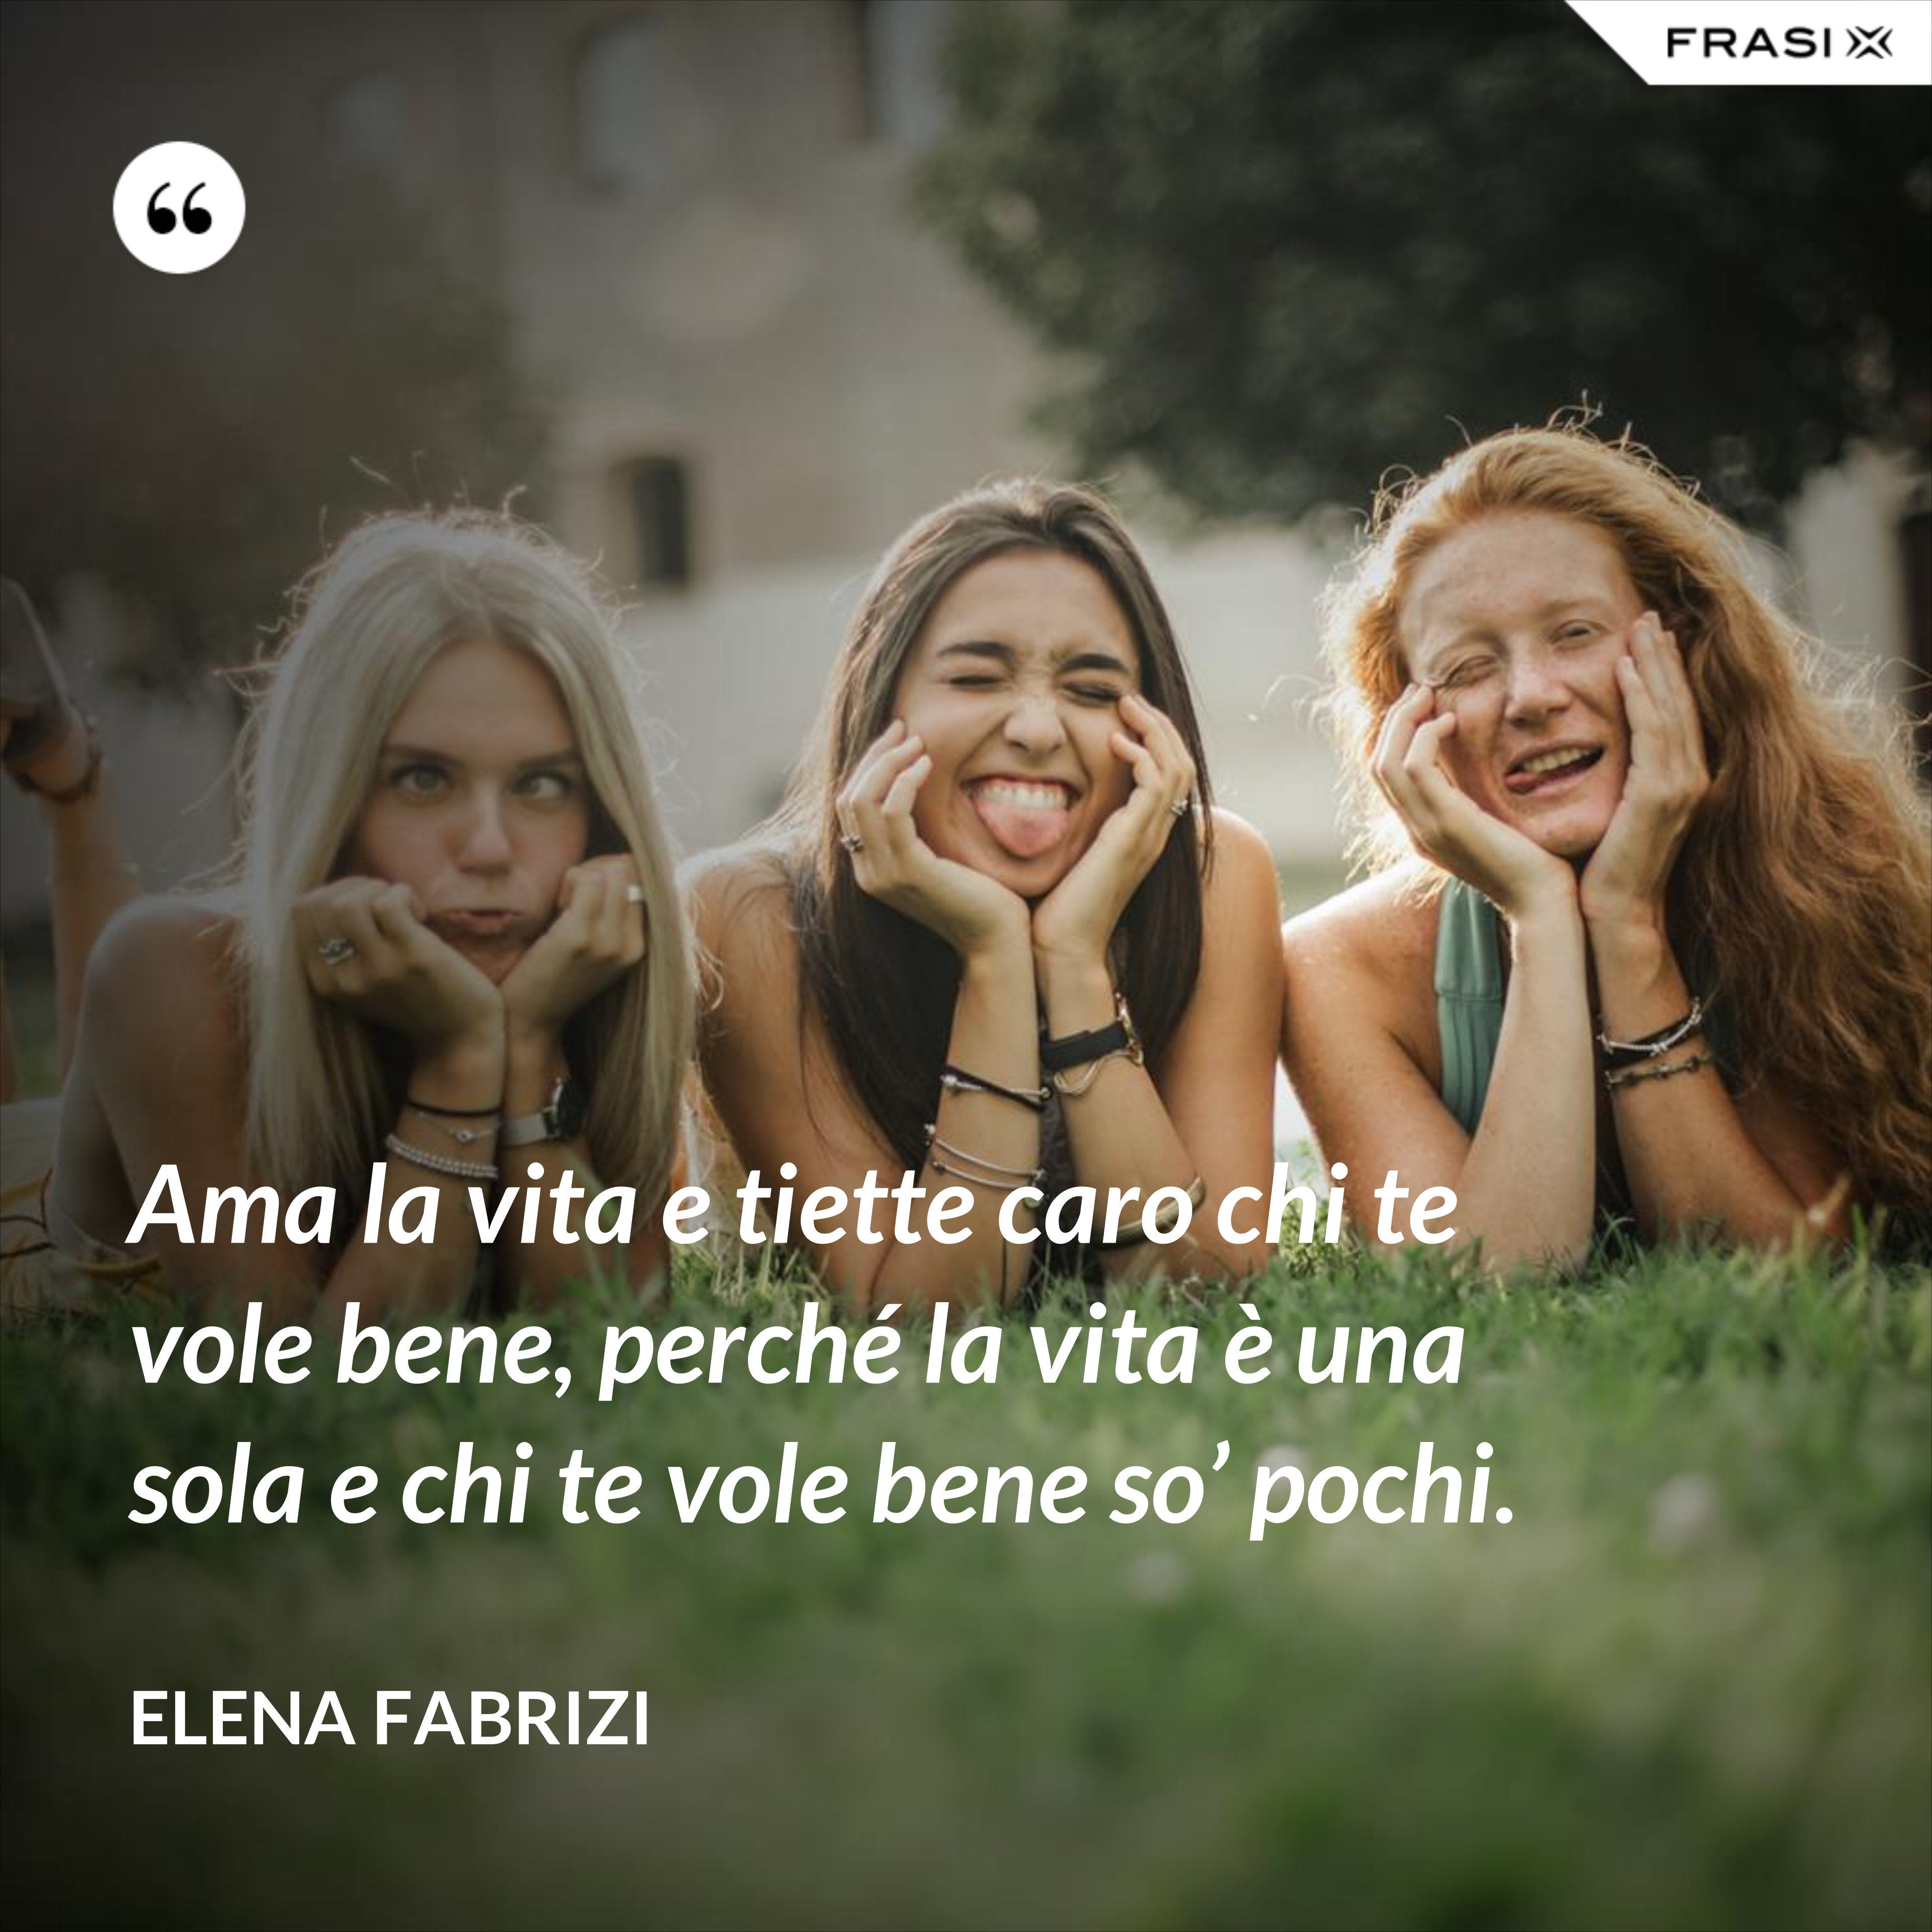 Ama la vita e tiette caro chi te vole bene, perché la vita è una sola e chi te vole bene so’ pochi. - Elena Fabrizi